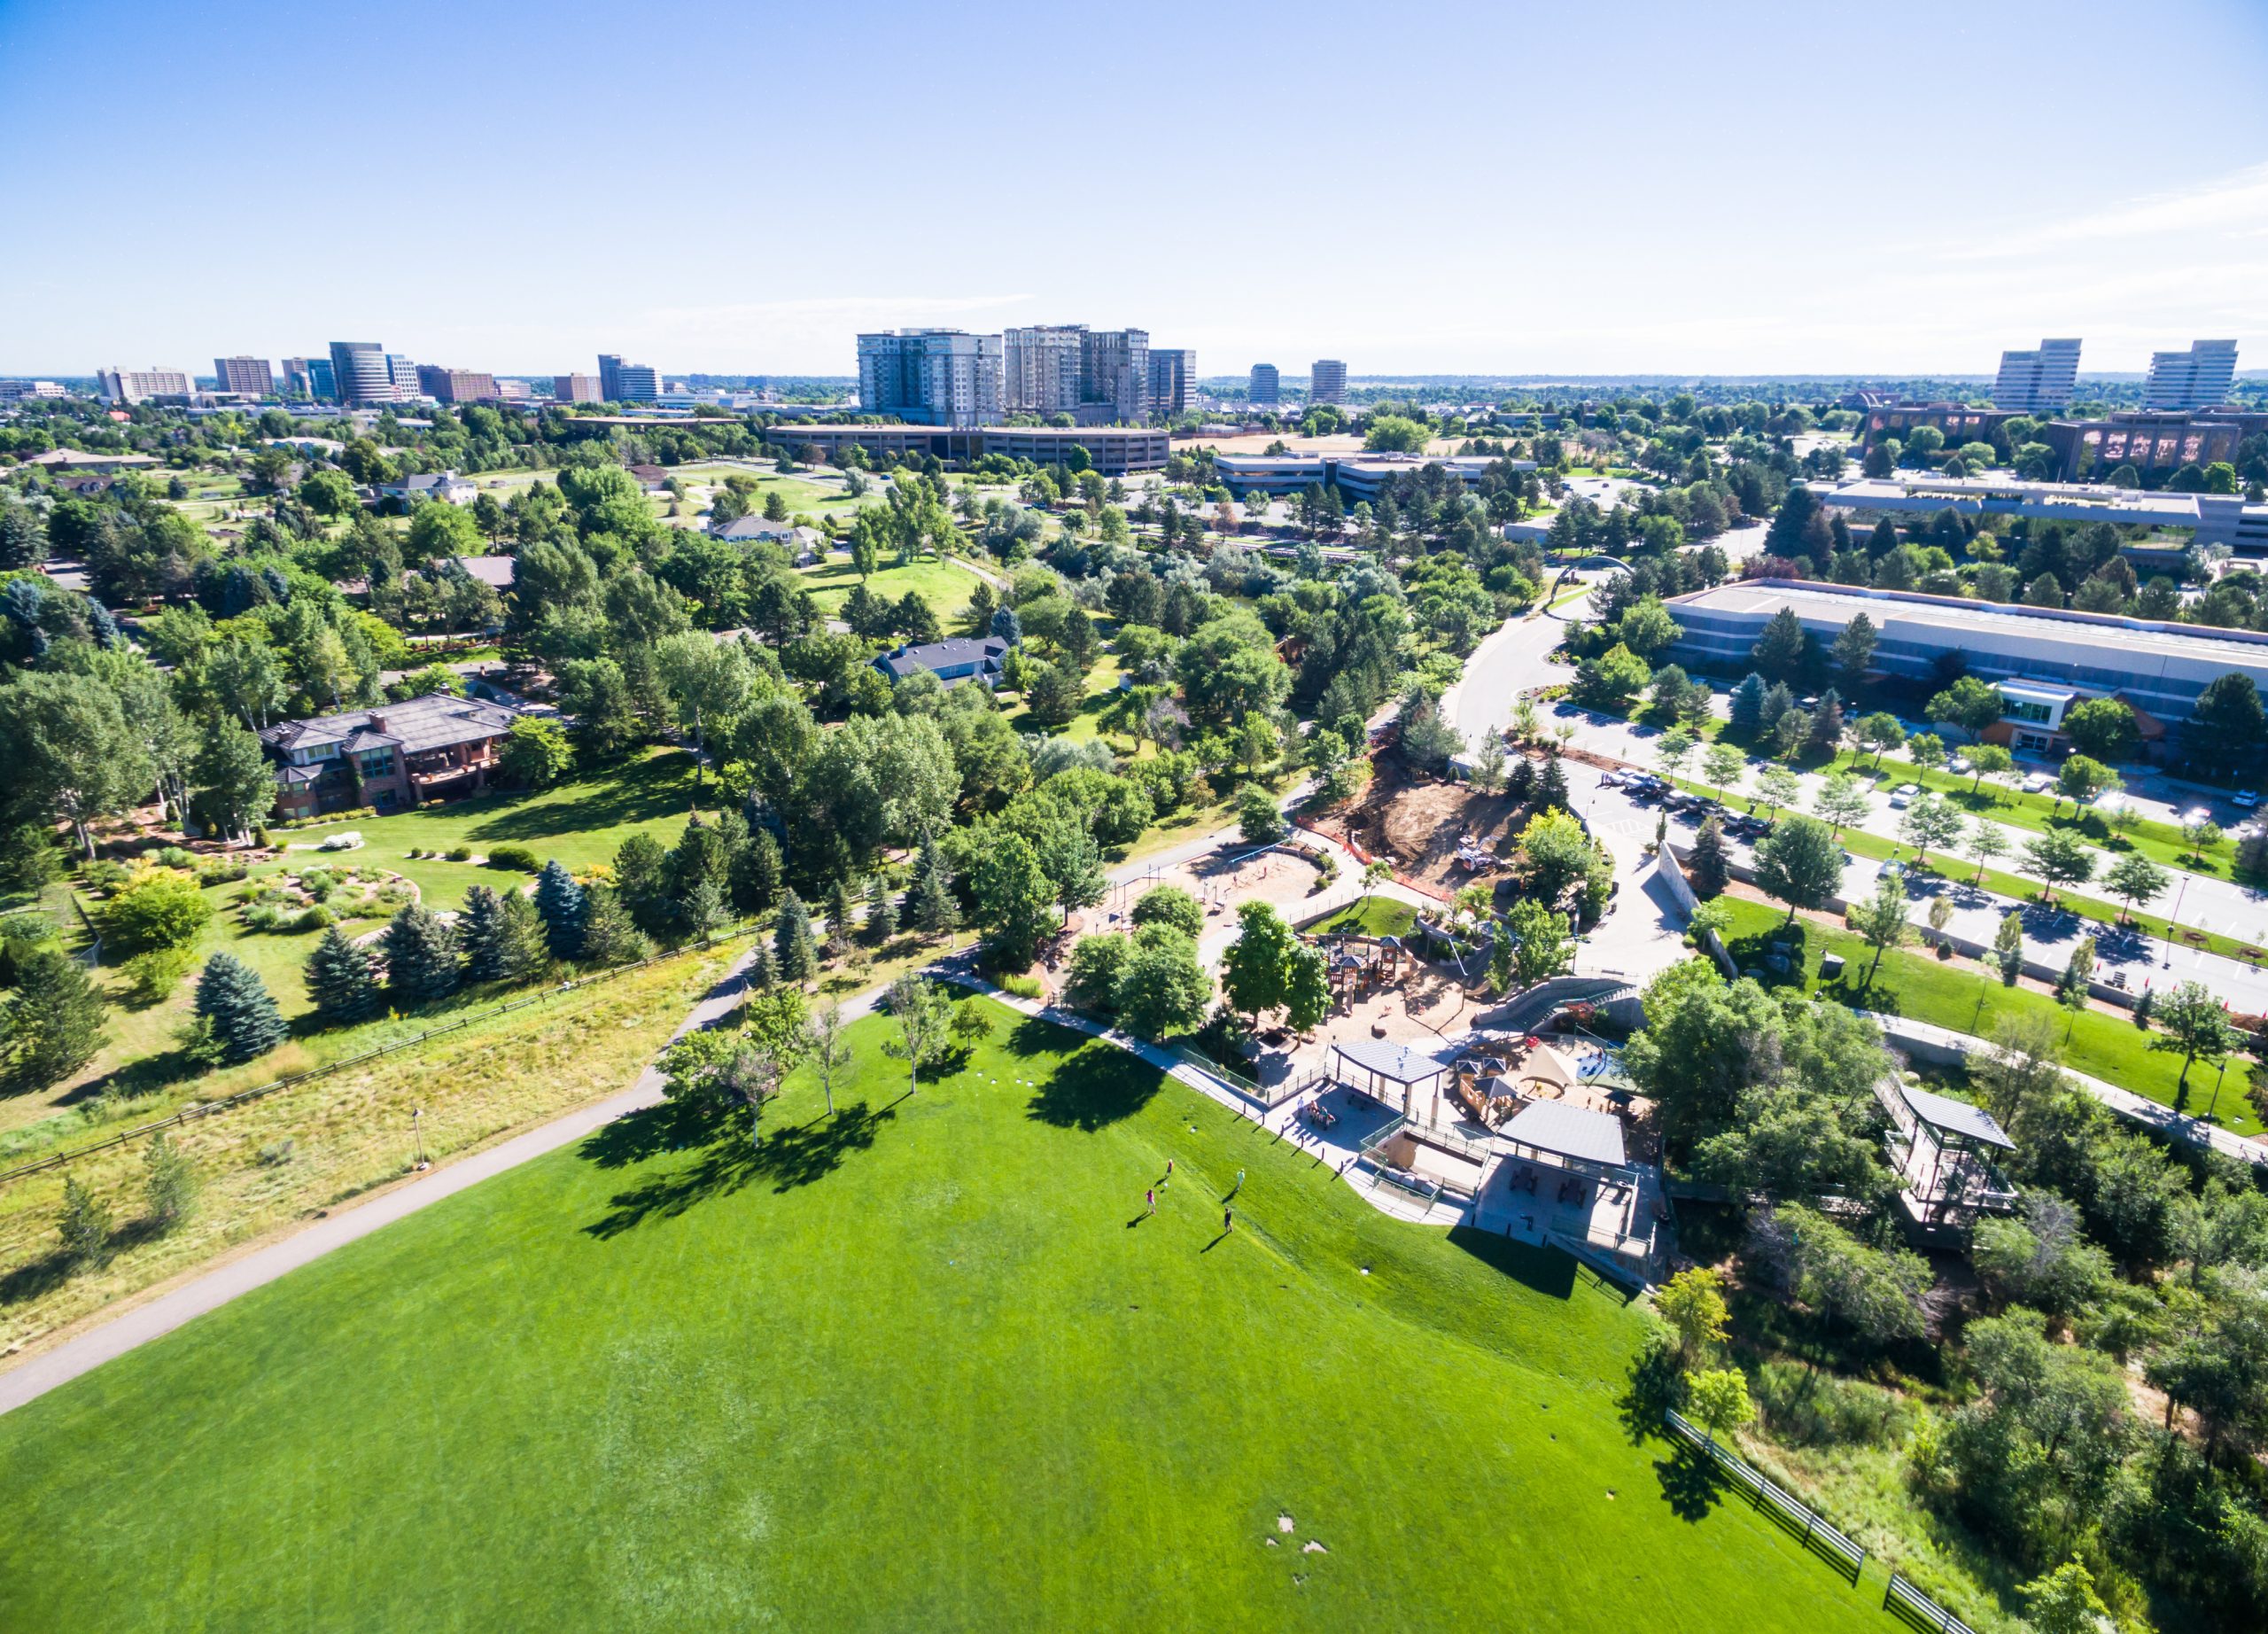 Aerial view of urban park in Denver, Colorado.